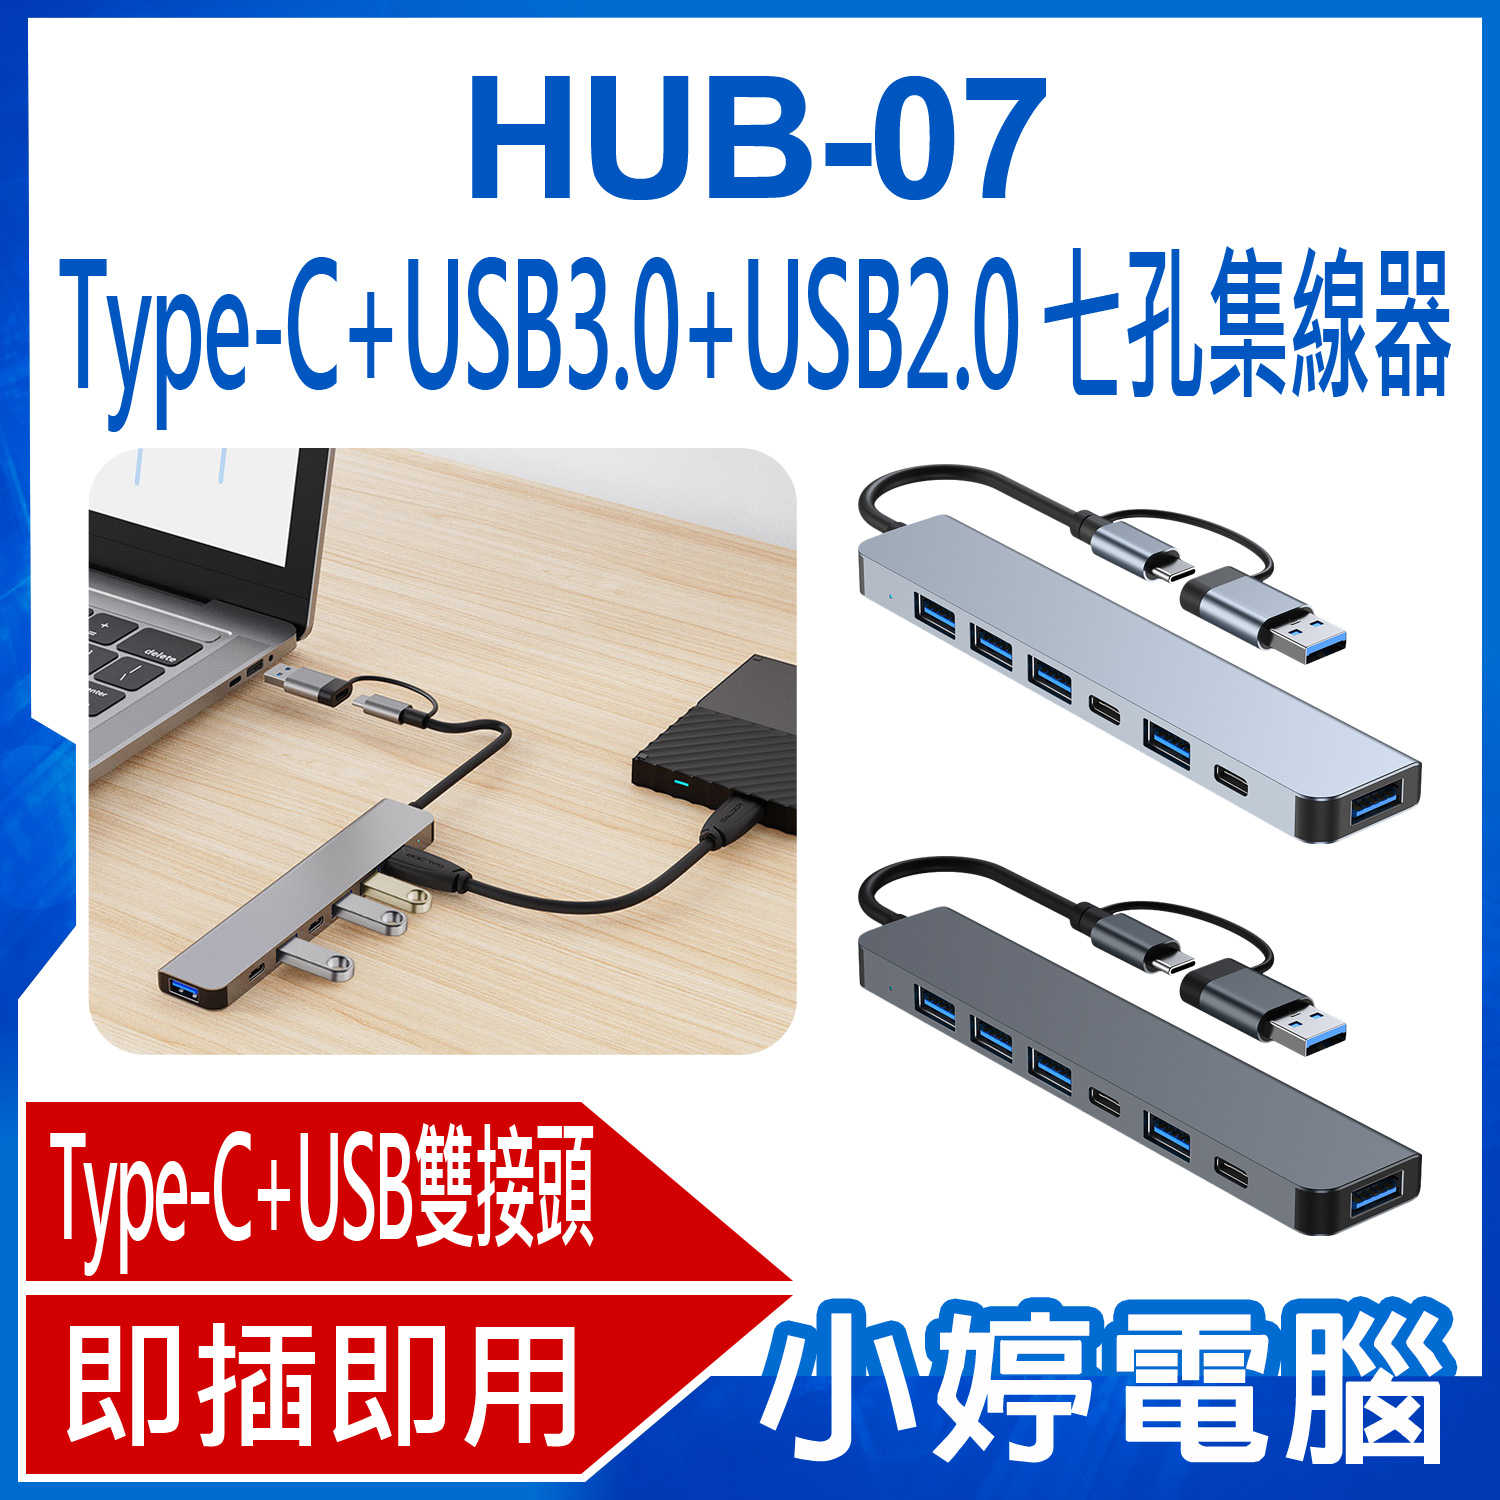 【小婷電腦】HUB-07 Type-C+USB3.0+USB2.0 七孔集線器 供電傳輸 七合一轉接分線器